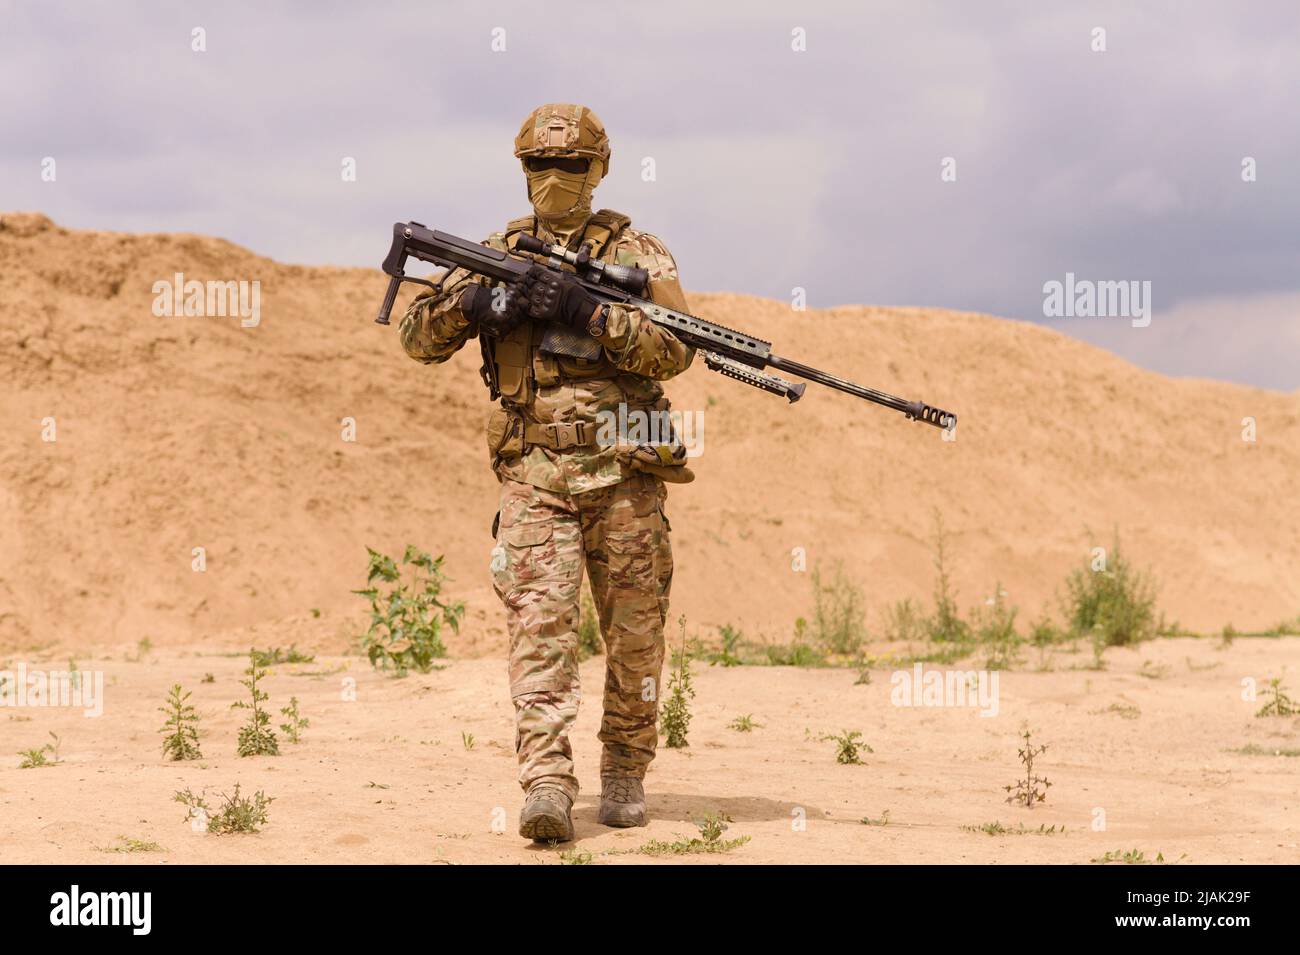 Soldat armé des forces spéciales à carabine dans le désert pendant une opération militaire. Banque D'Images